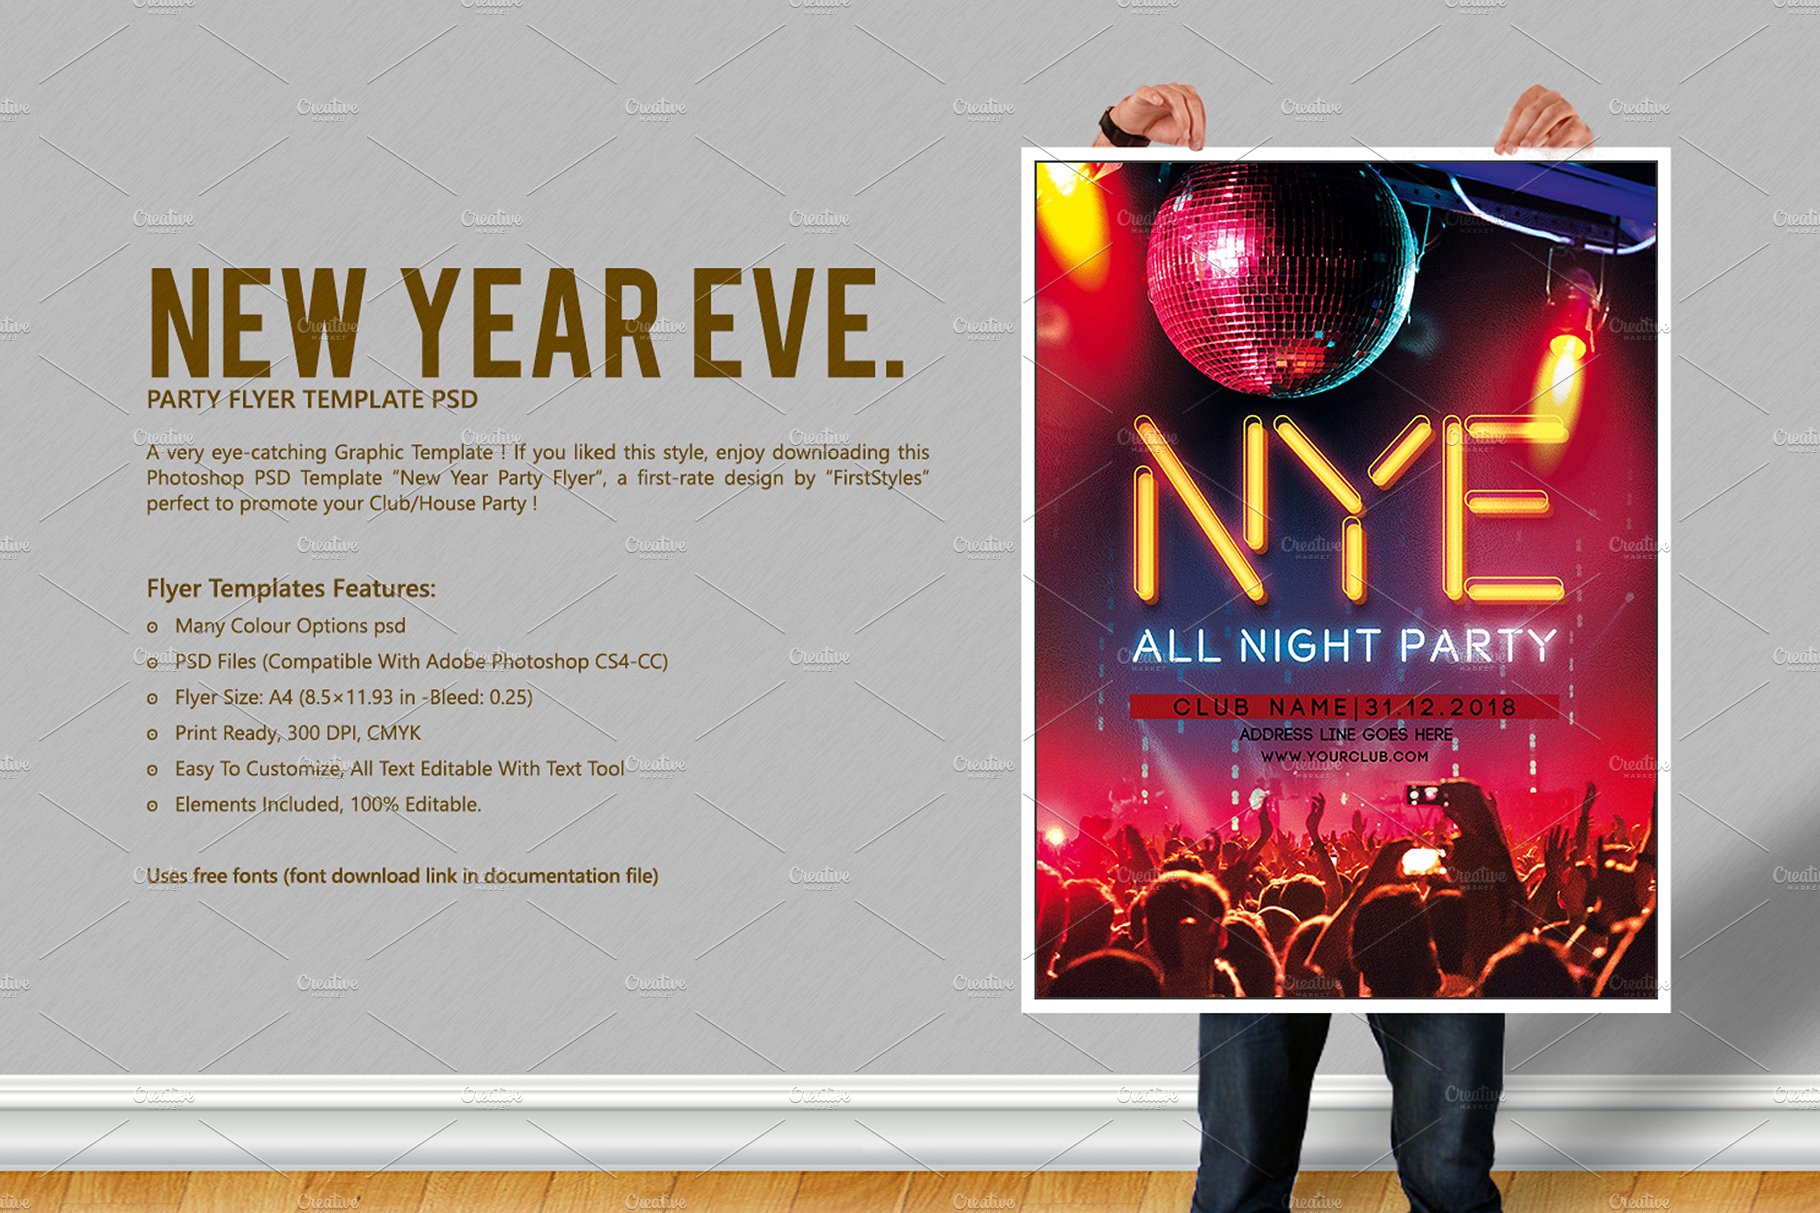 新年前夜倒计时派对海报模板 New Year Eve Party Flyer [psd]插图